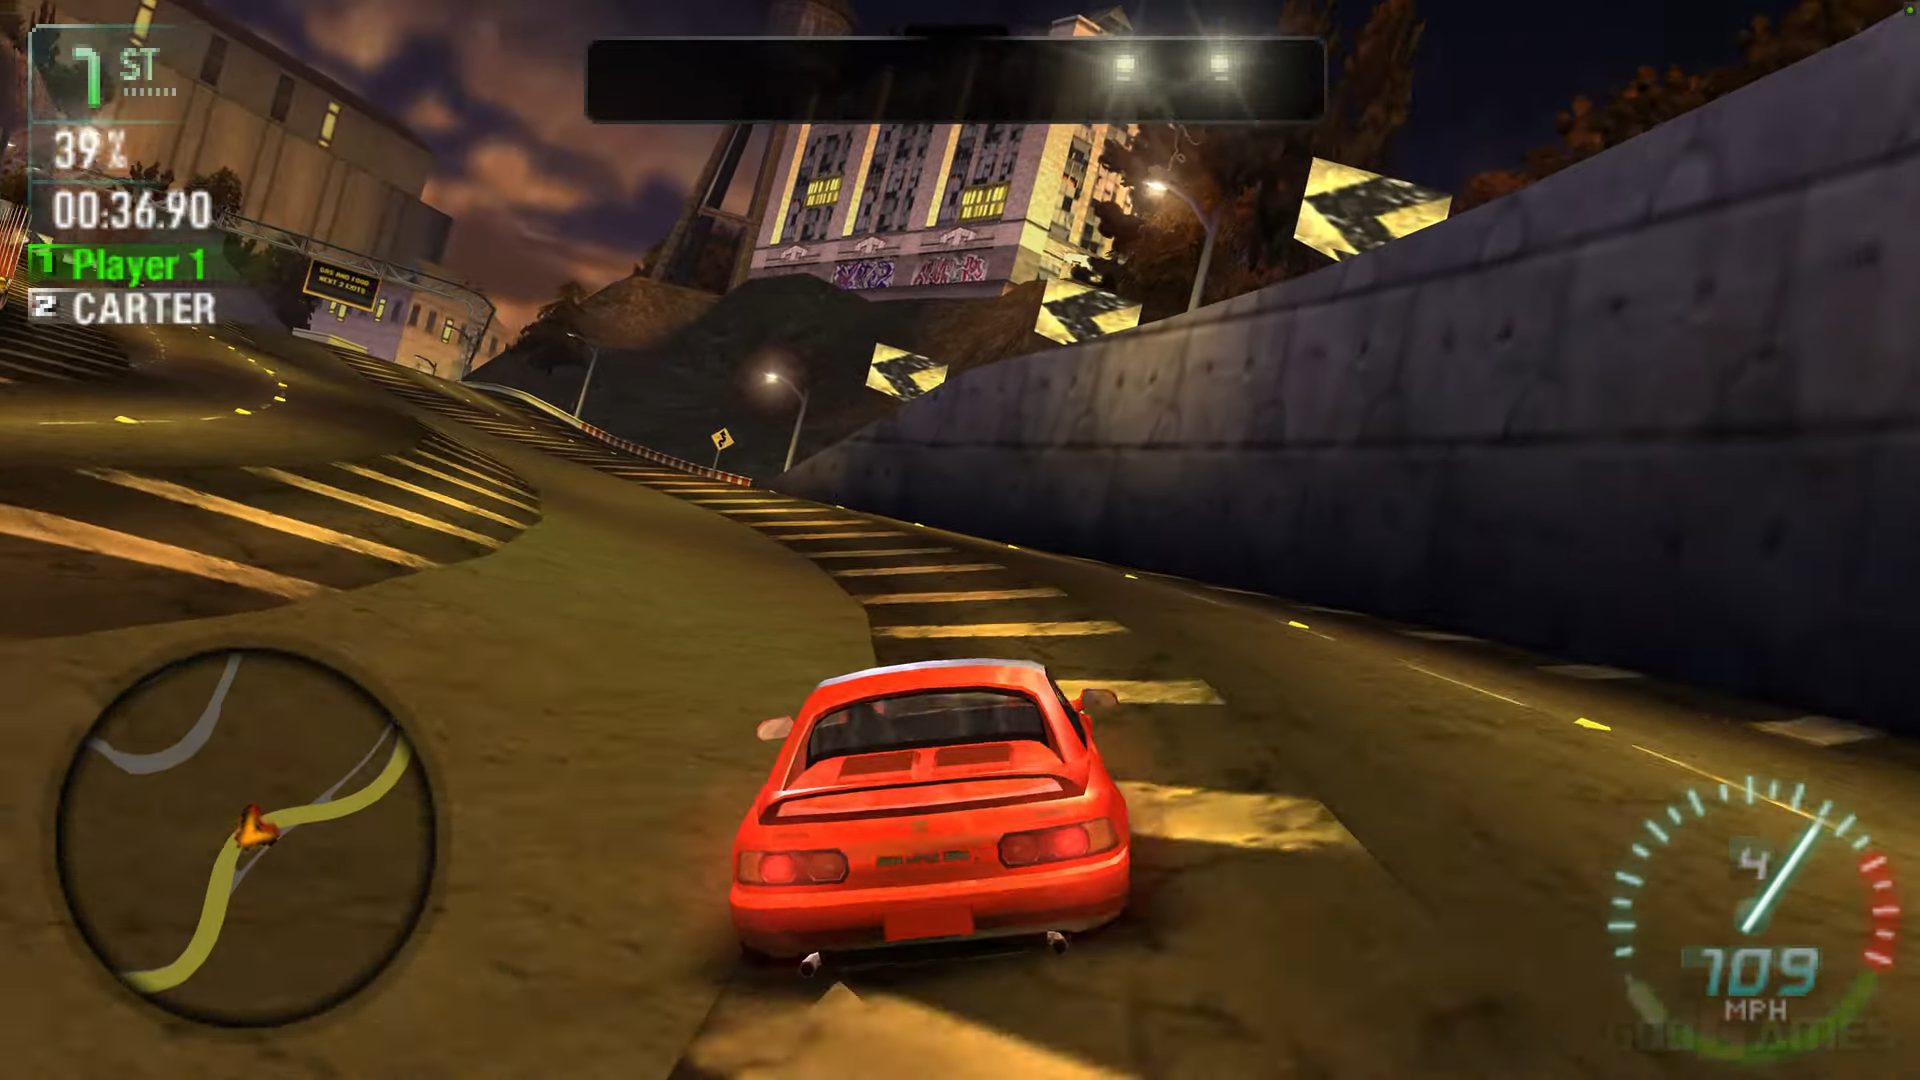 Téléchargement de la ROM Need For Speed Carbon - Own The City en français  pour Playstation Portable (États-Unis)